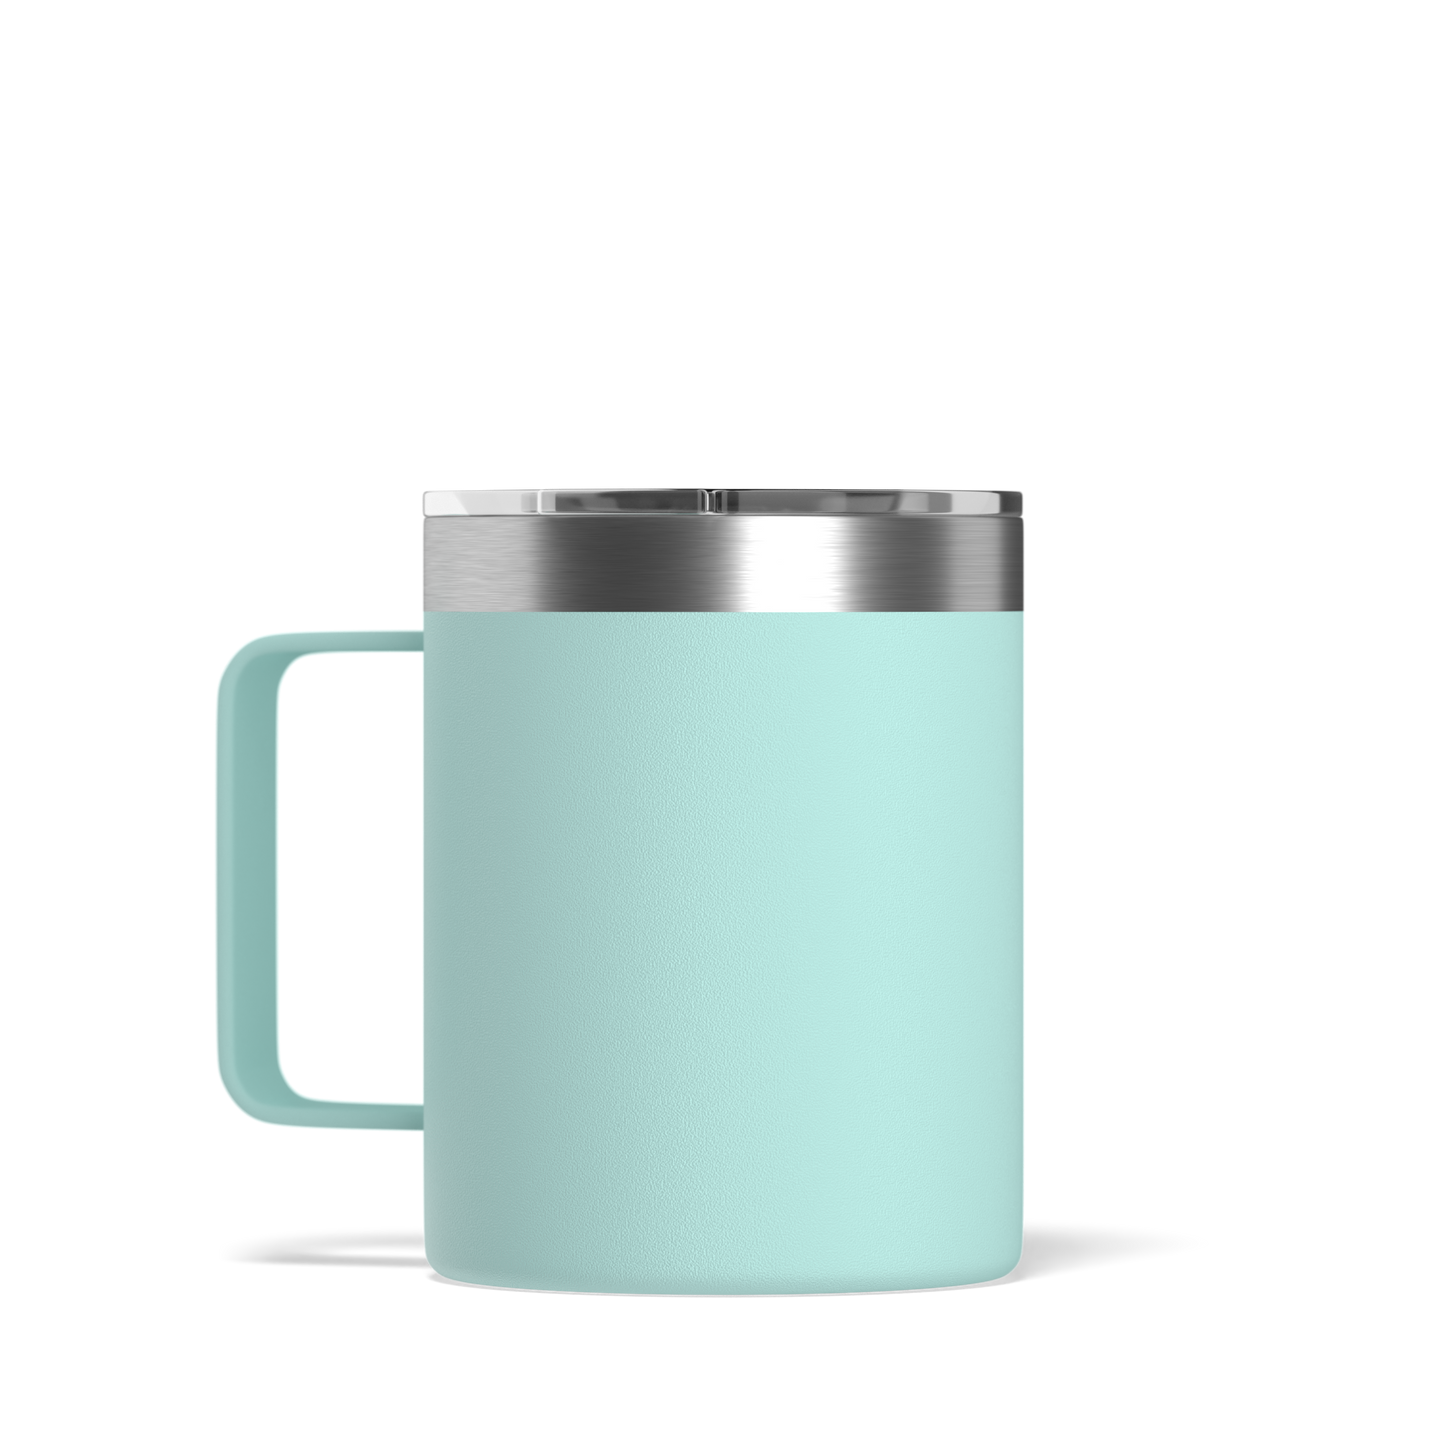 Savor 14oz Stainless Steel Insulated Coffee Mug with Handle Mug - Aqua